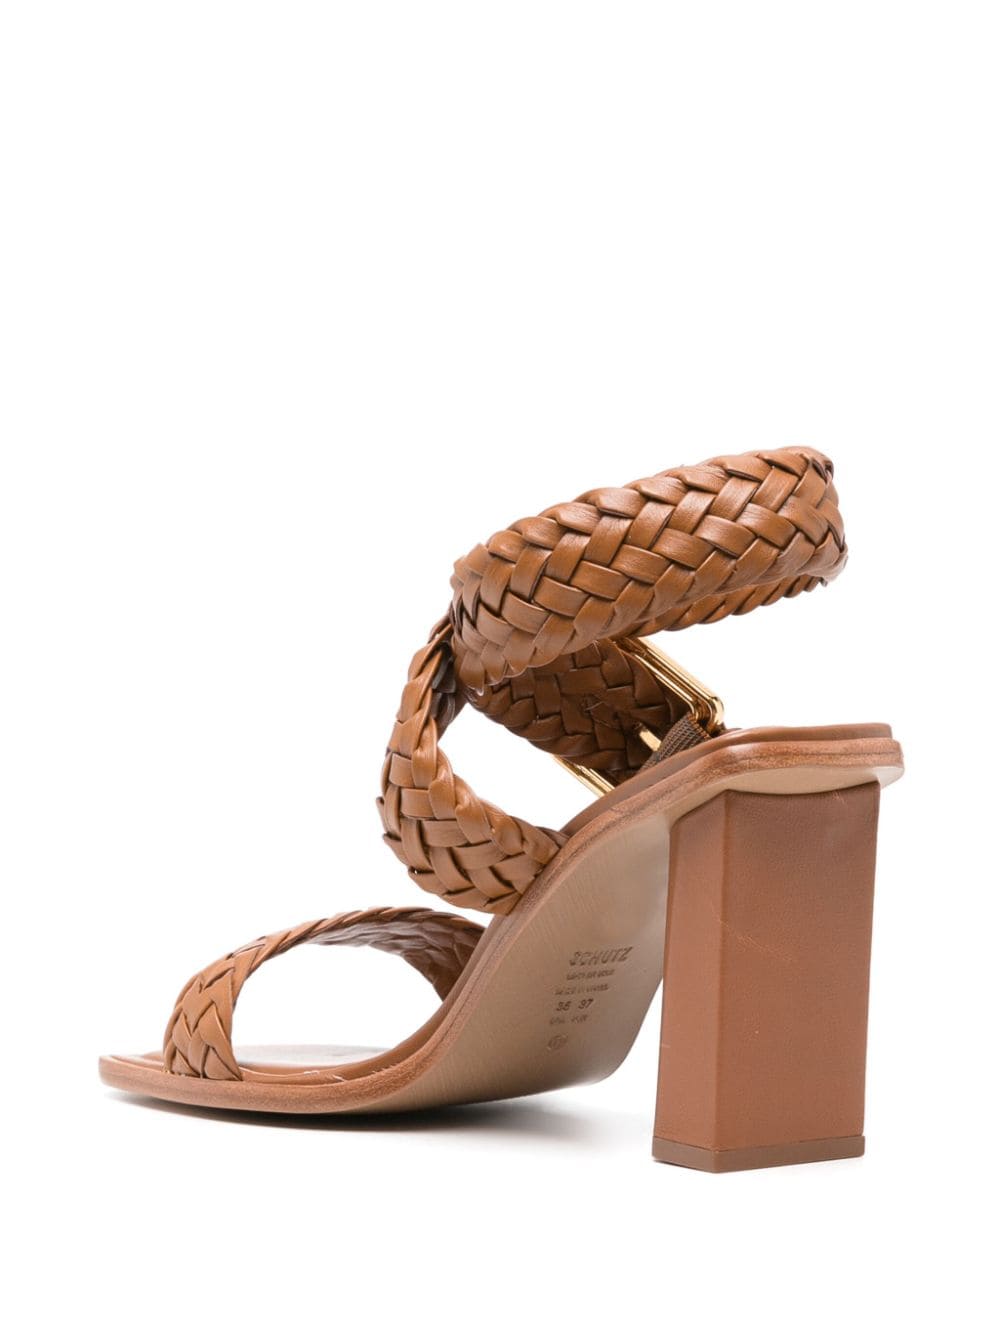 Schutz 95mm braided leather sandals - Bruin